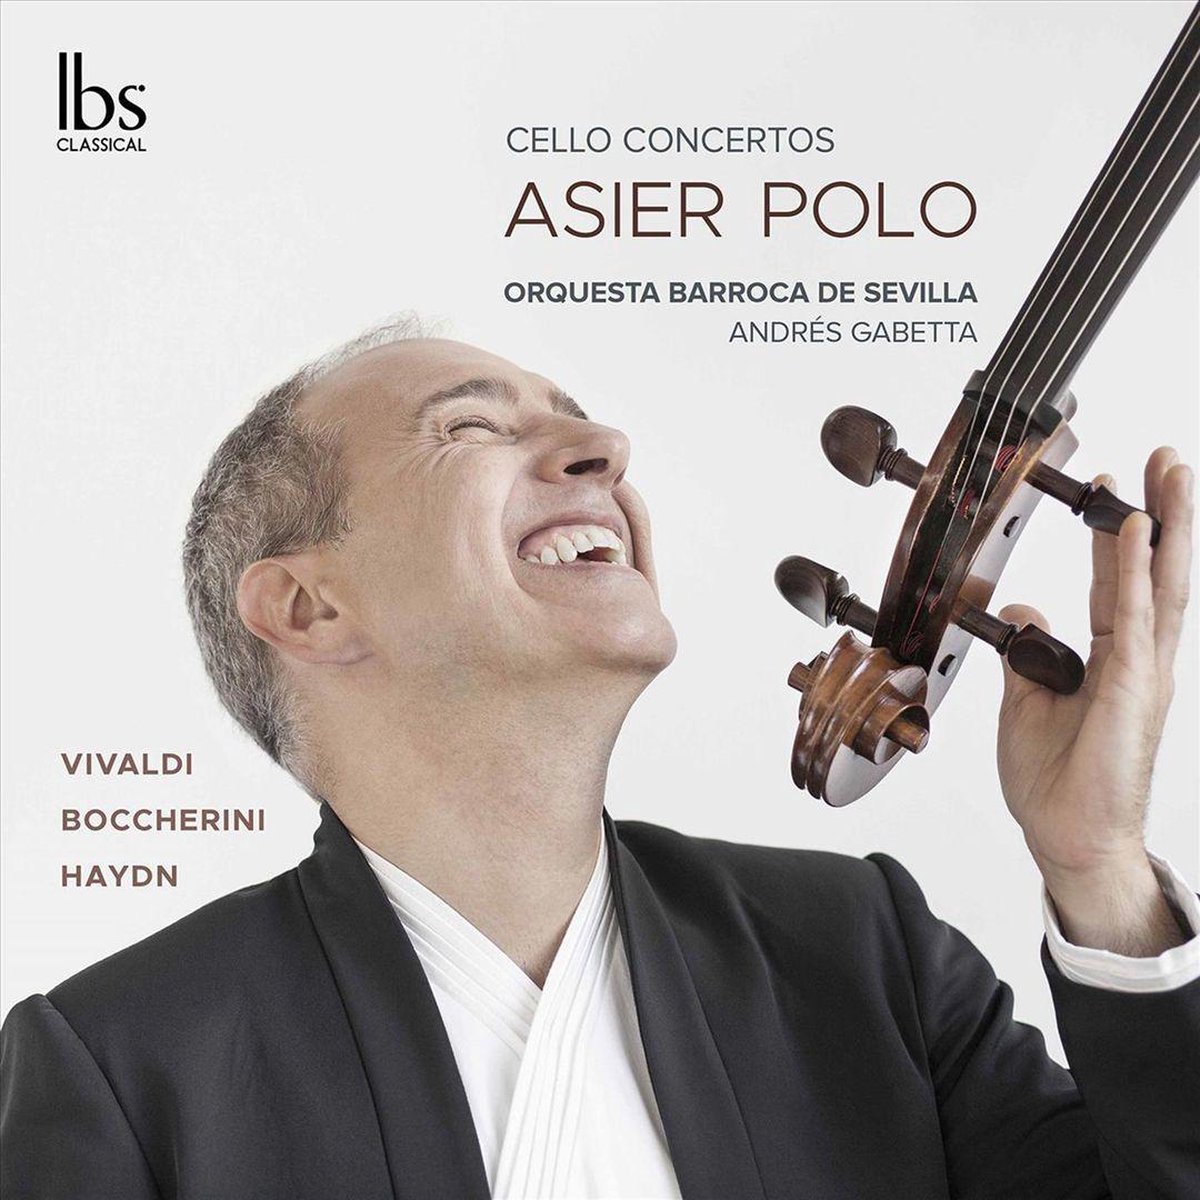 Vivaldi/Boccherini/Haydn: Cello Concertos - Asier Polo